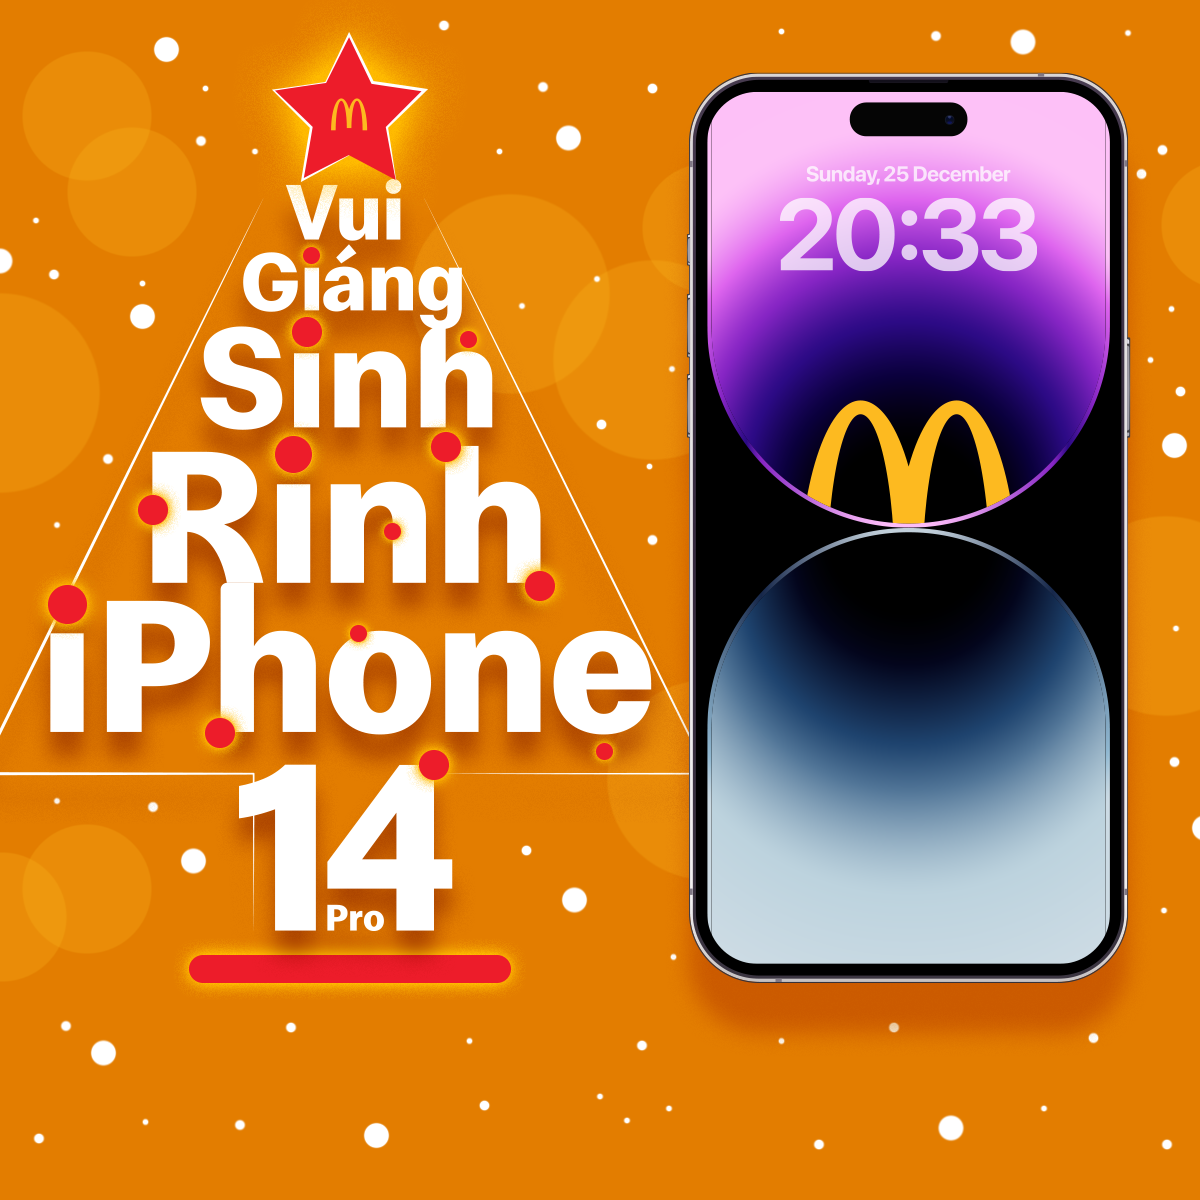 Kết quả chương trình Vui Giáng Sinh, Rinh iPhone 14 Pro